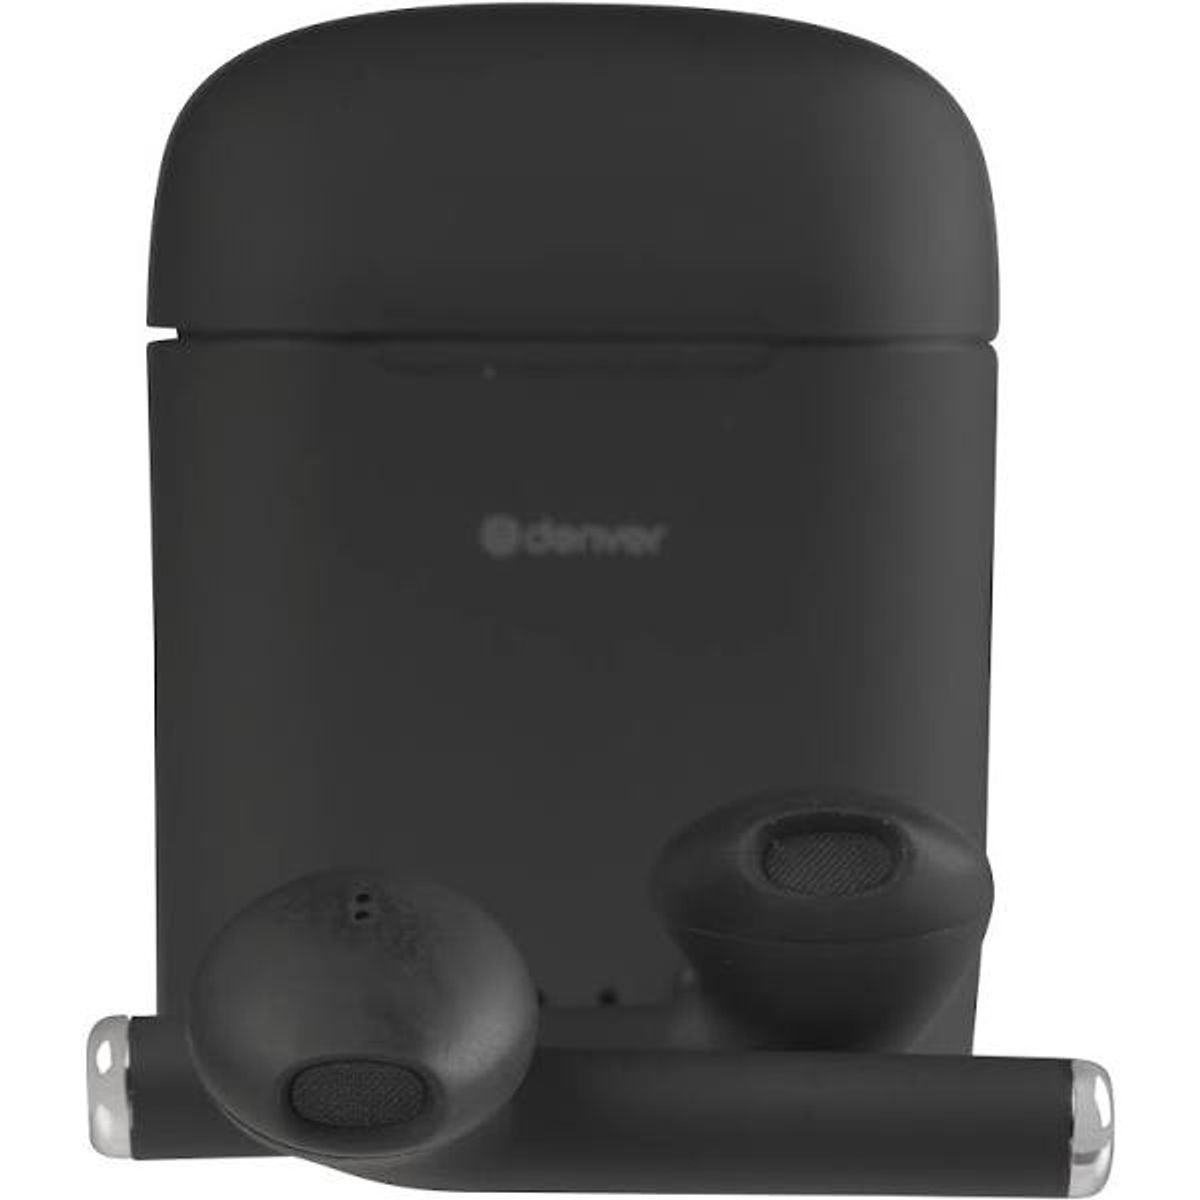 DENVER TWE-46 Schwarz, In-ear Kopfhörer schwarz Bluetooth